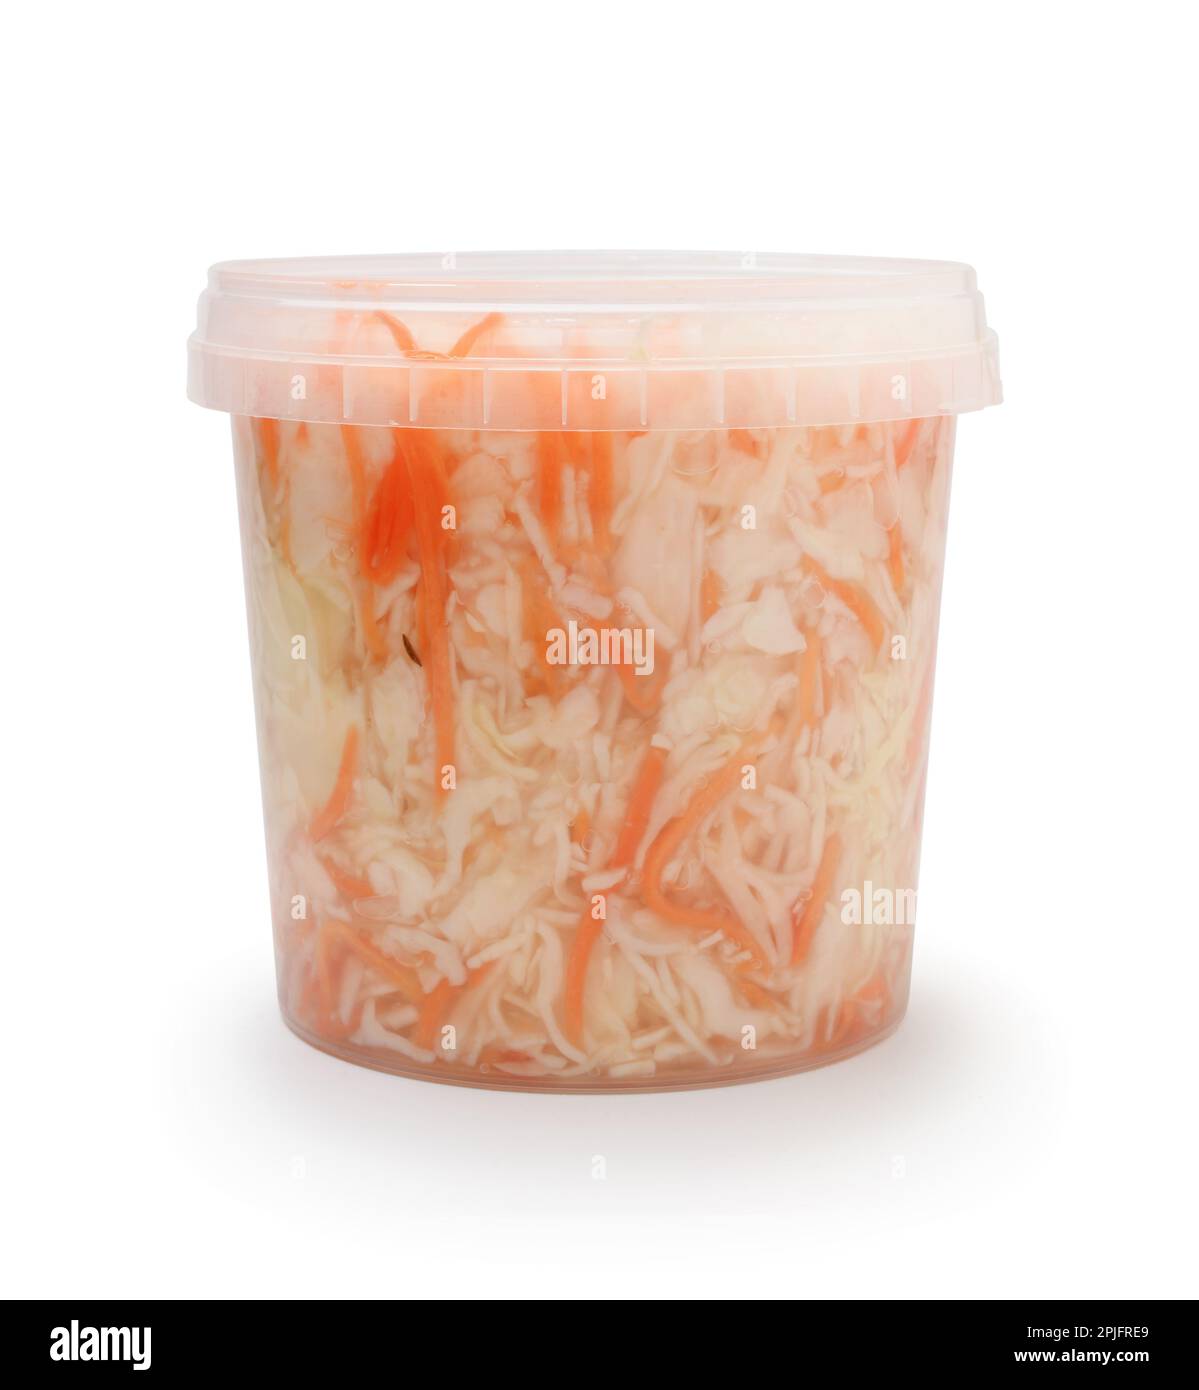 Plastic bucket full of sauerkraut isolated on white. Stock Photo